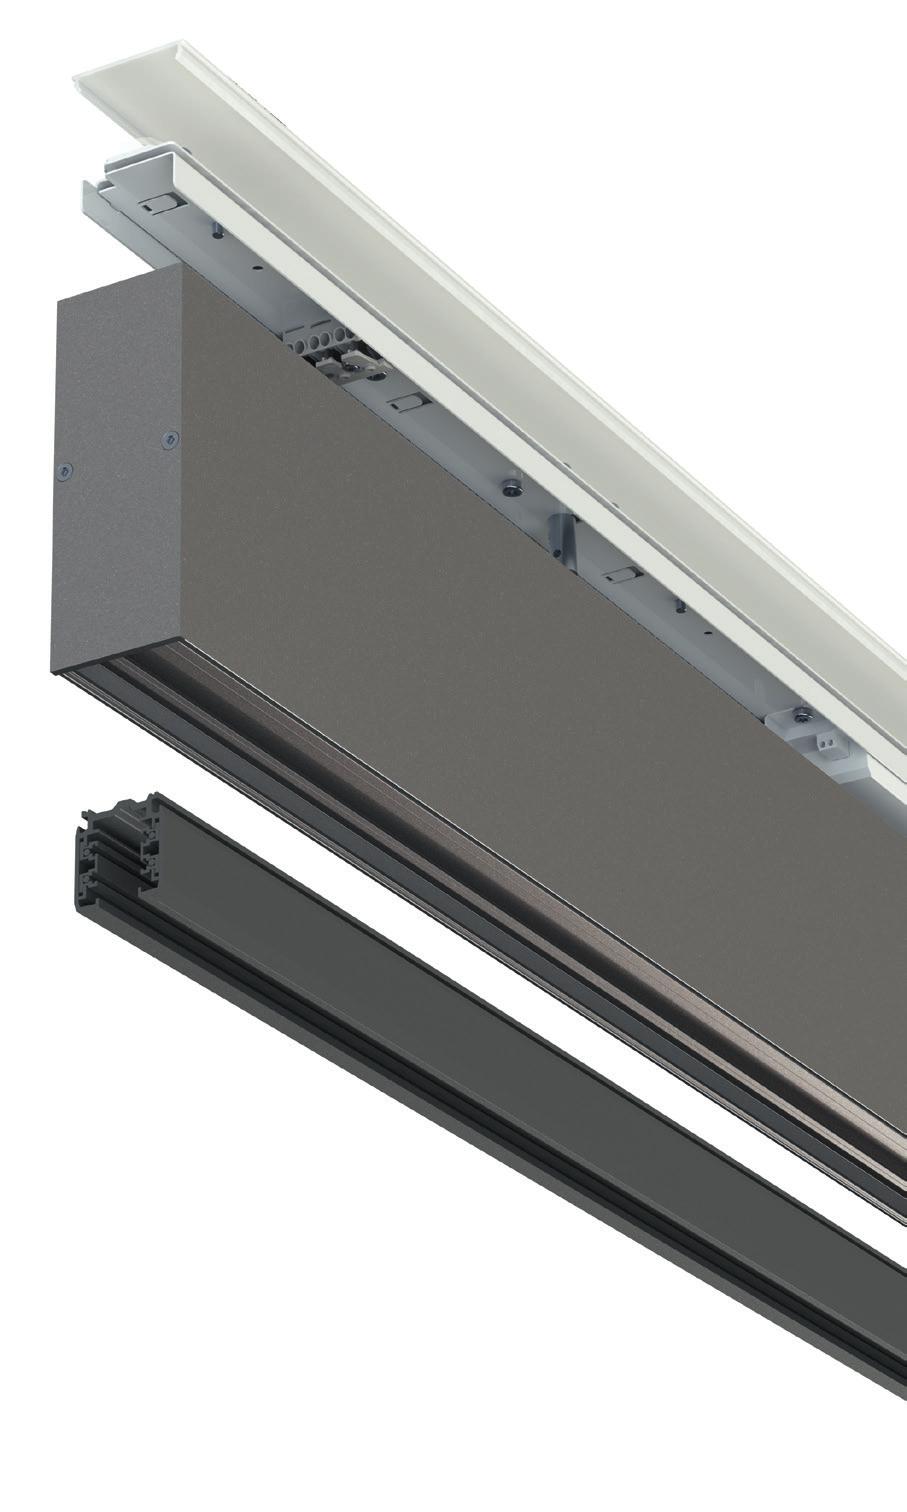 LED PLATINE Das HxO-Profil kann mit LED Zhaga Platinen ausgestattet werden und bietet ein Lumenpaket von 130 lm/w oder 2950 lm/m.